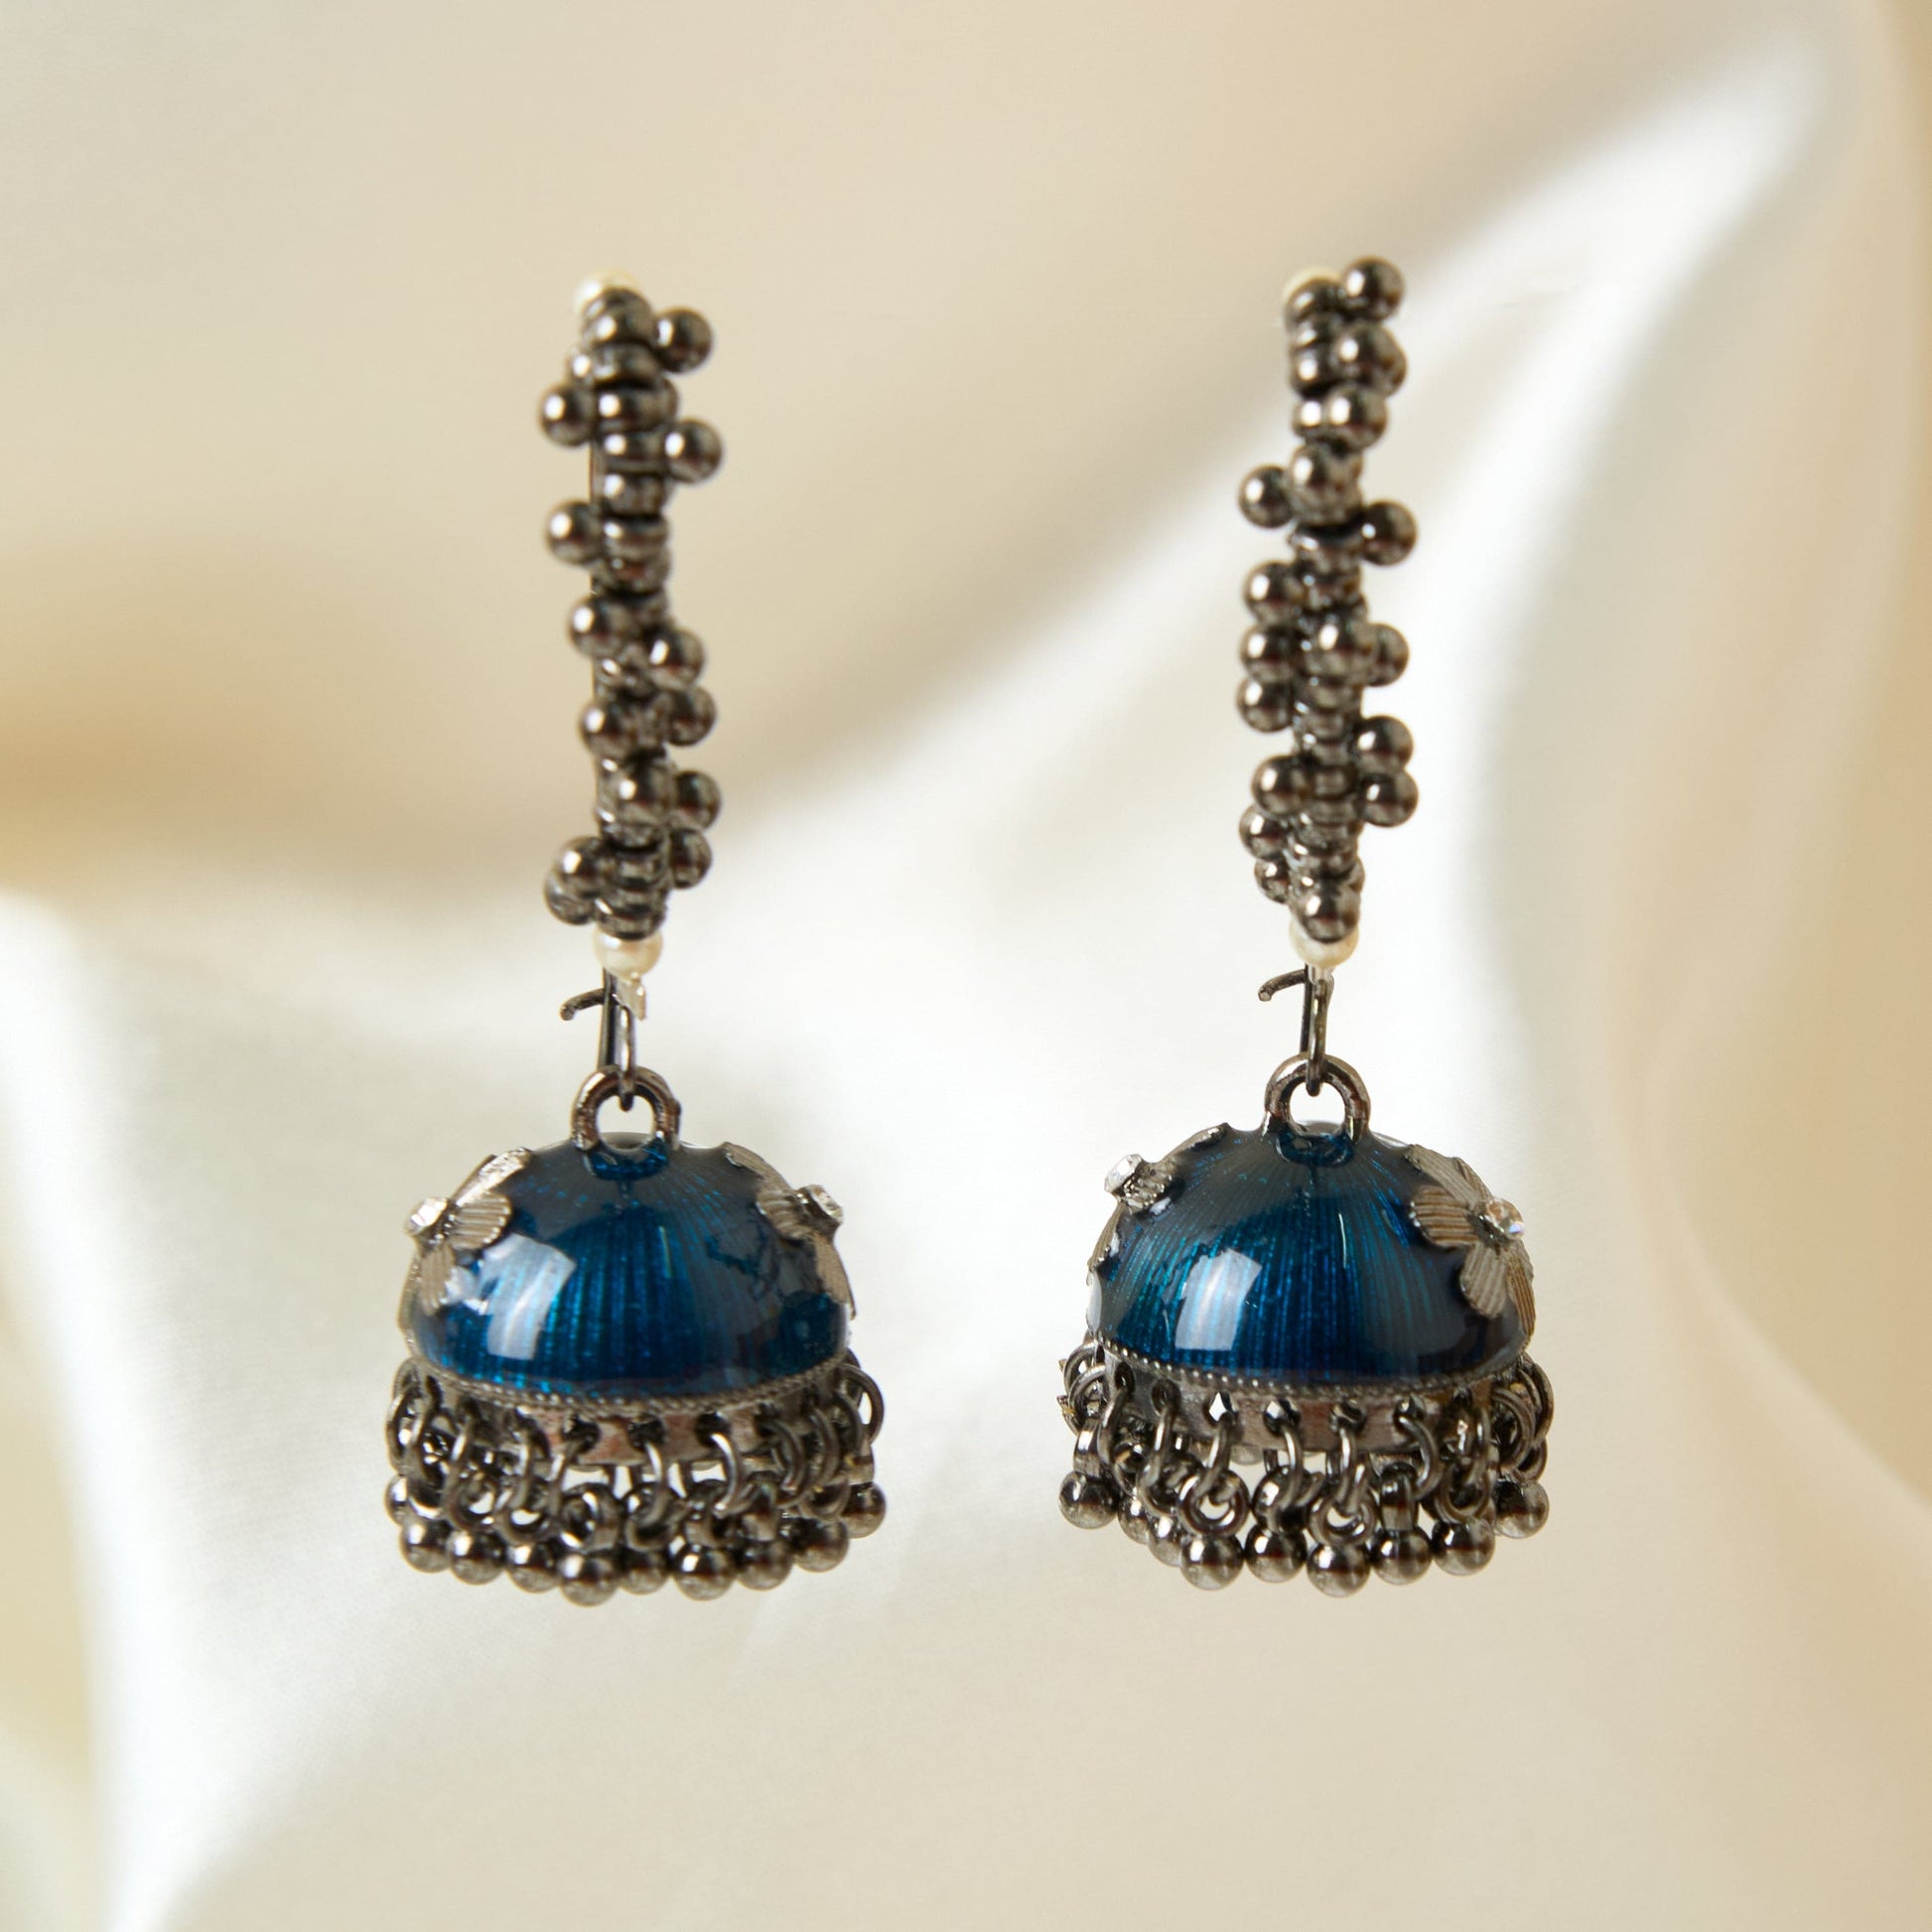 Moonstruck Gold Pearl Hoop Jhumki Fashion Earrings For Women (Blue) - www.MoonstruckINC.com